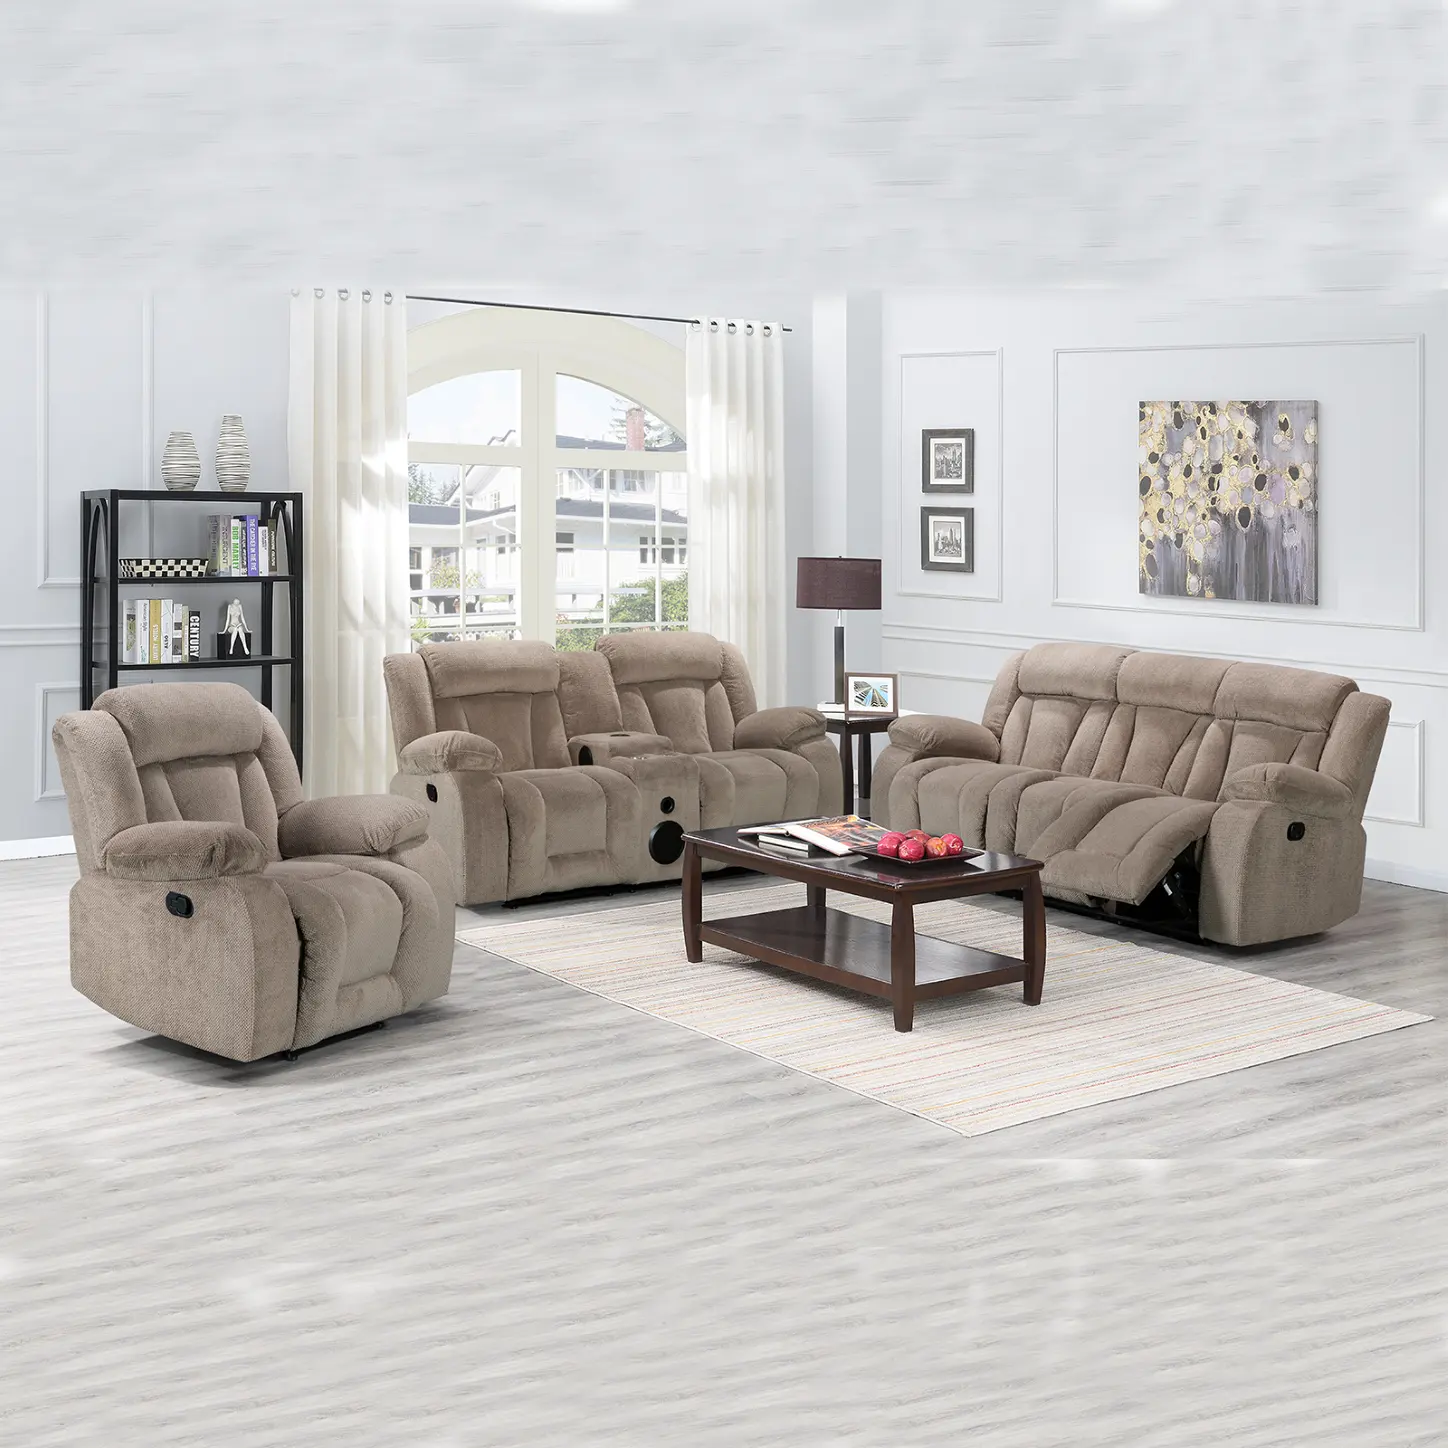 Rimocy — canapé inclinable en tissu velours, siège et 3 places, style américain, pivotant, glisseur, bas prix, personnalisé, 123